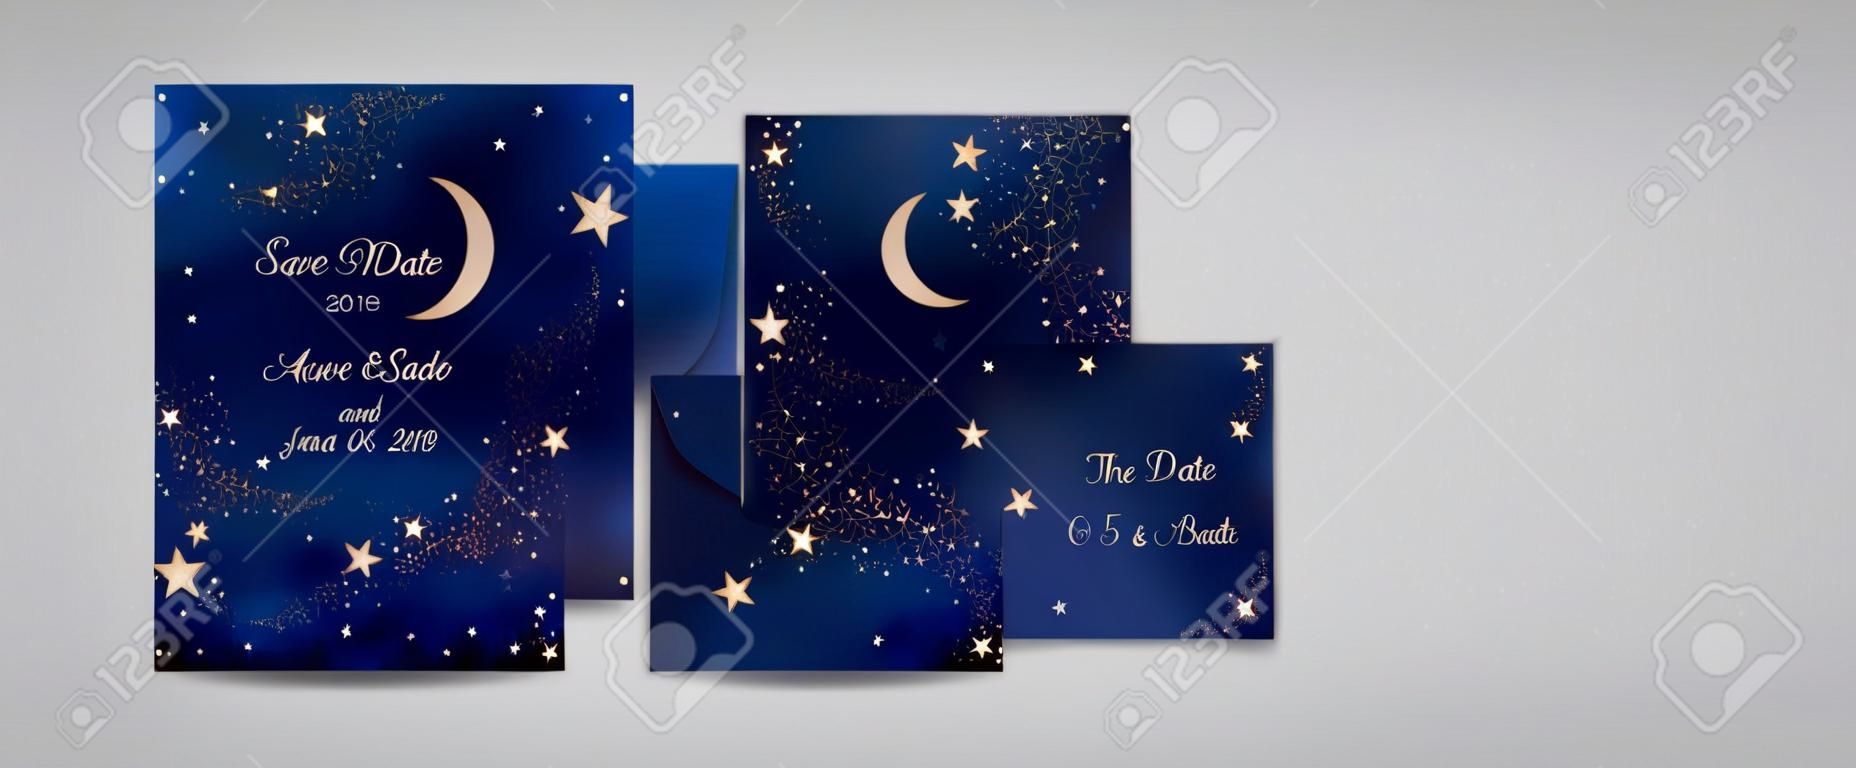 Mystischer Nachthimmelhintergrund mit Halbmond und Sternen. Hochzeitseinladung bei Mondschein und Save the Date Karte im Vektor